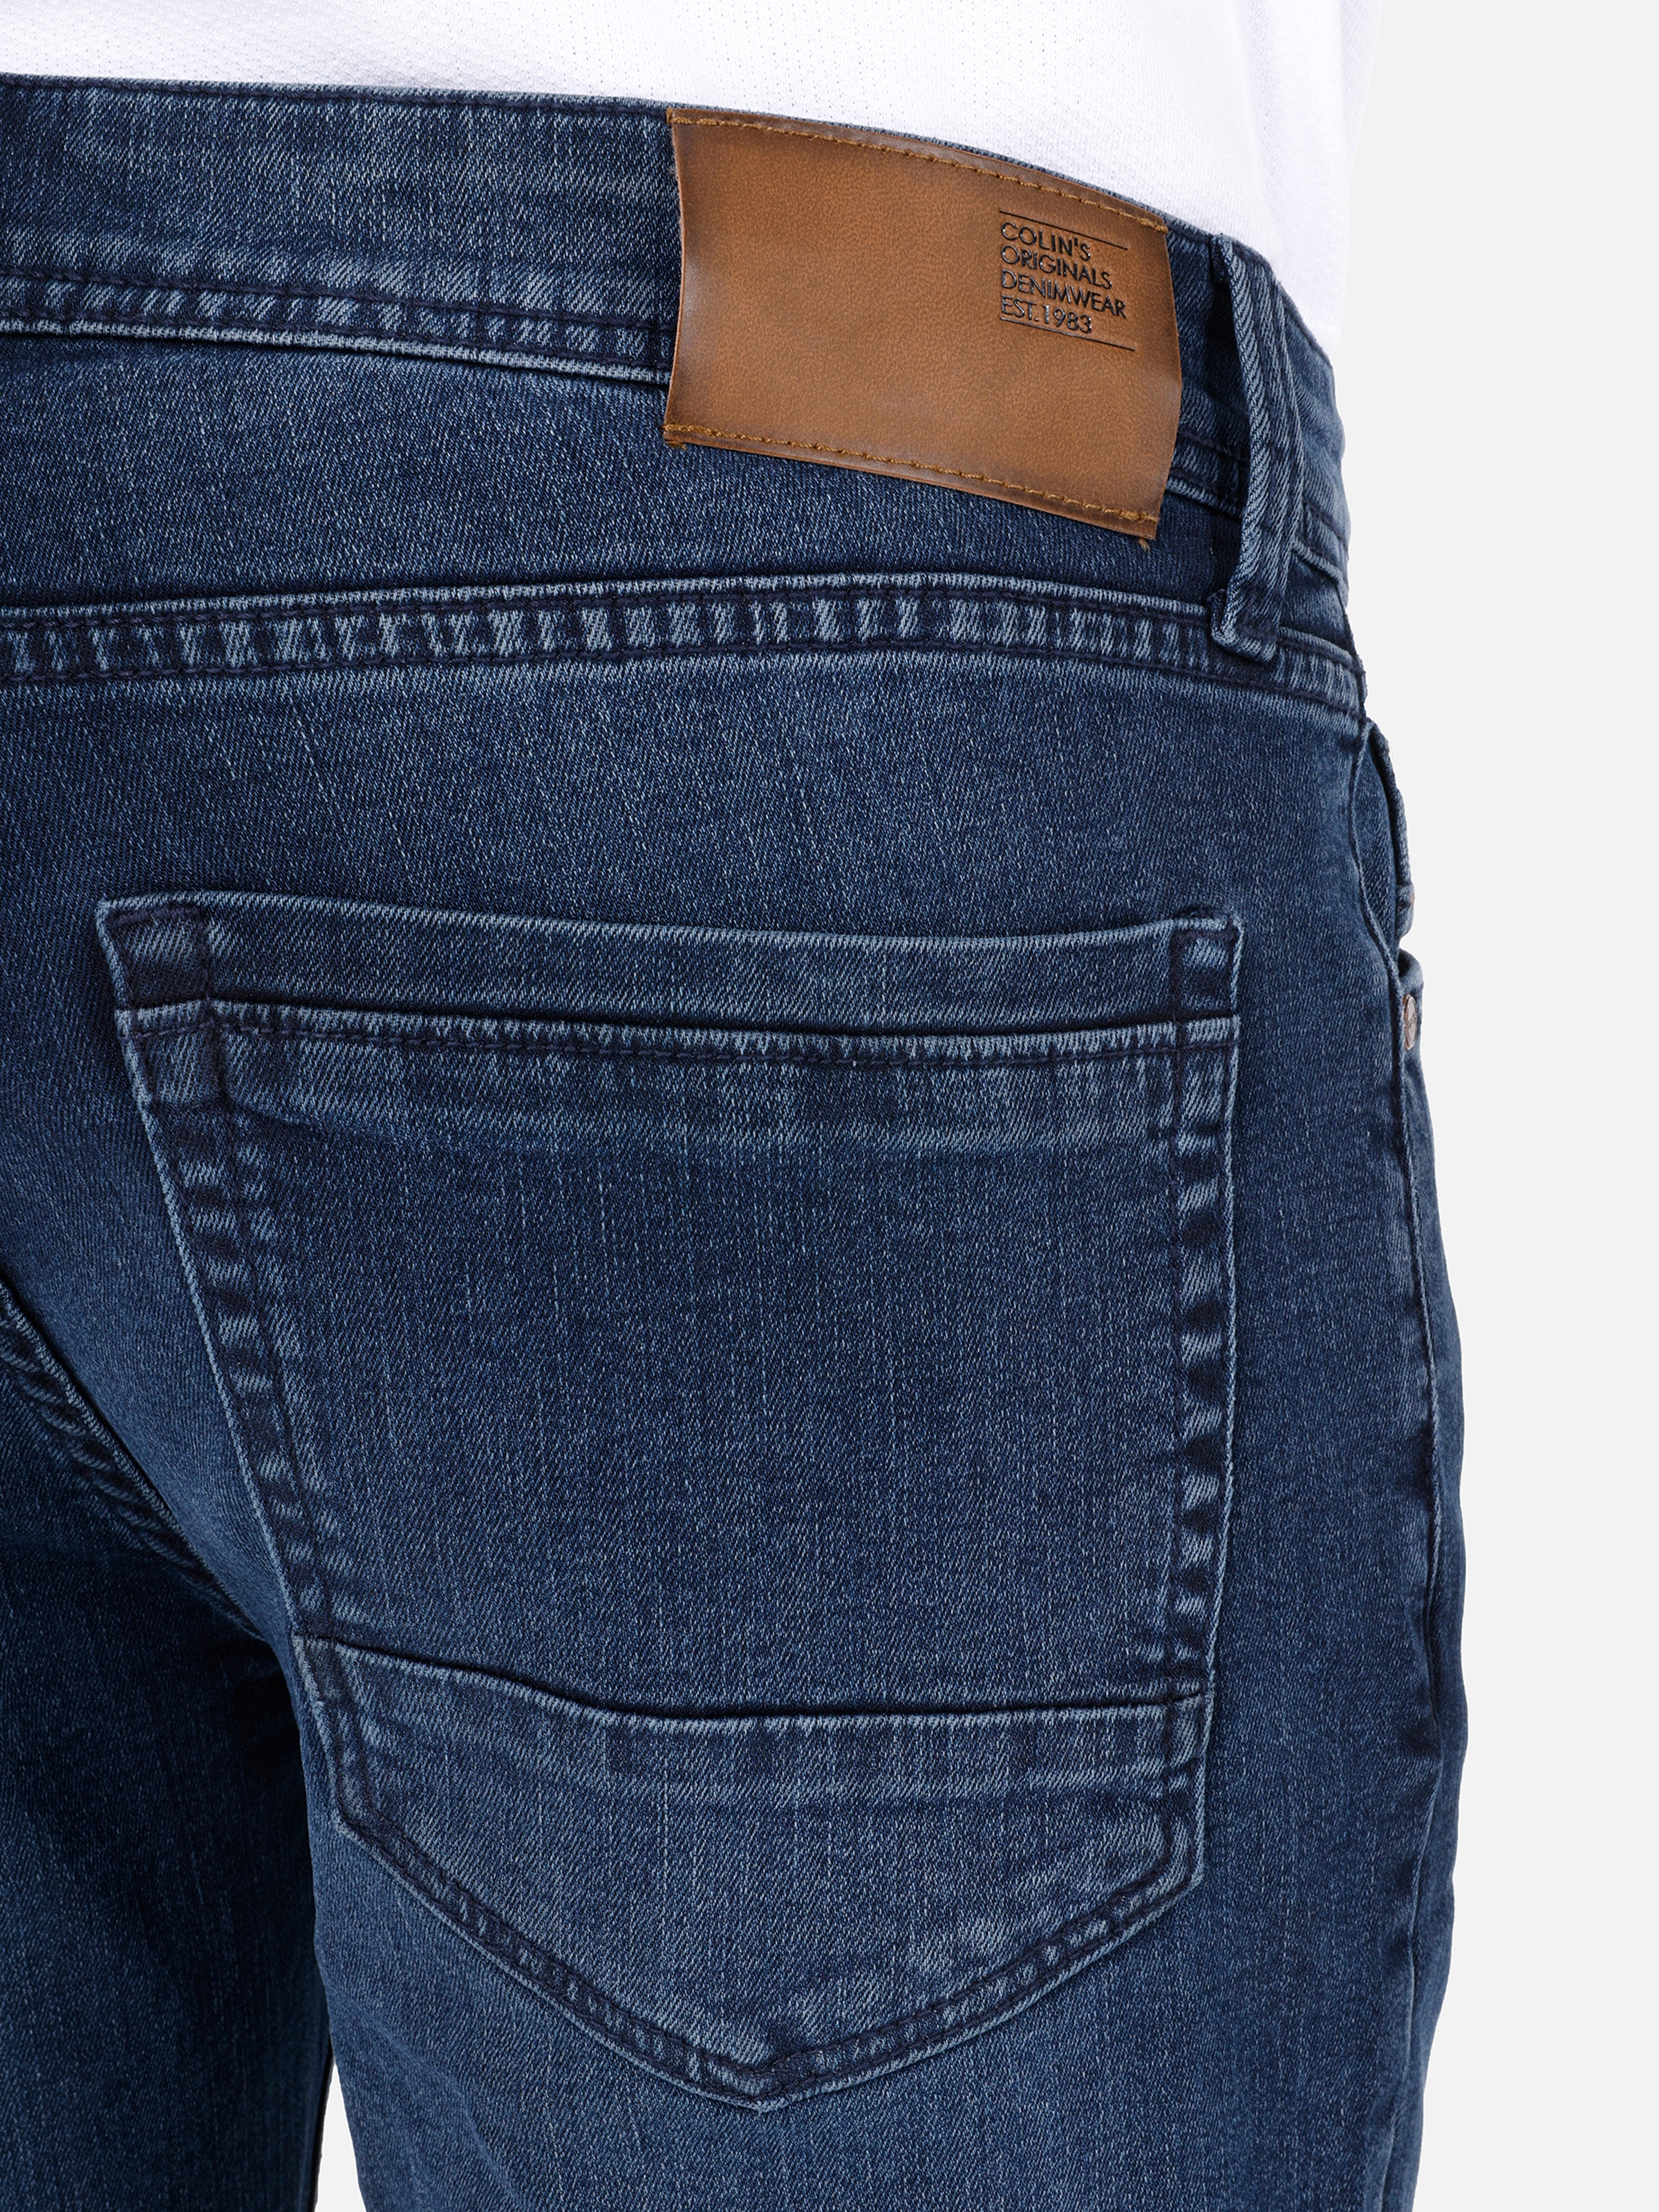 Afișați detalii pentru Short / Pantaloni Scurti De Barbati Denim   